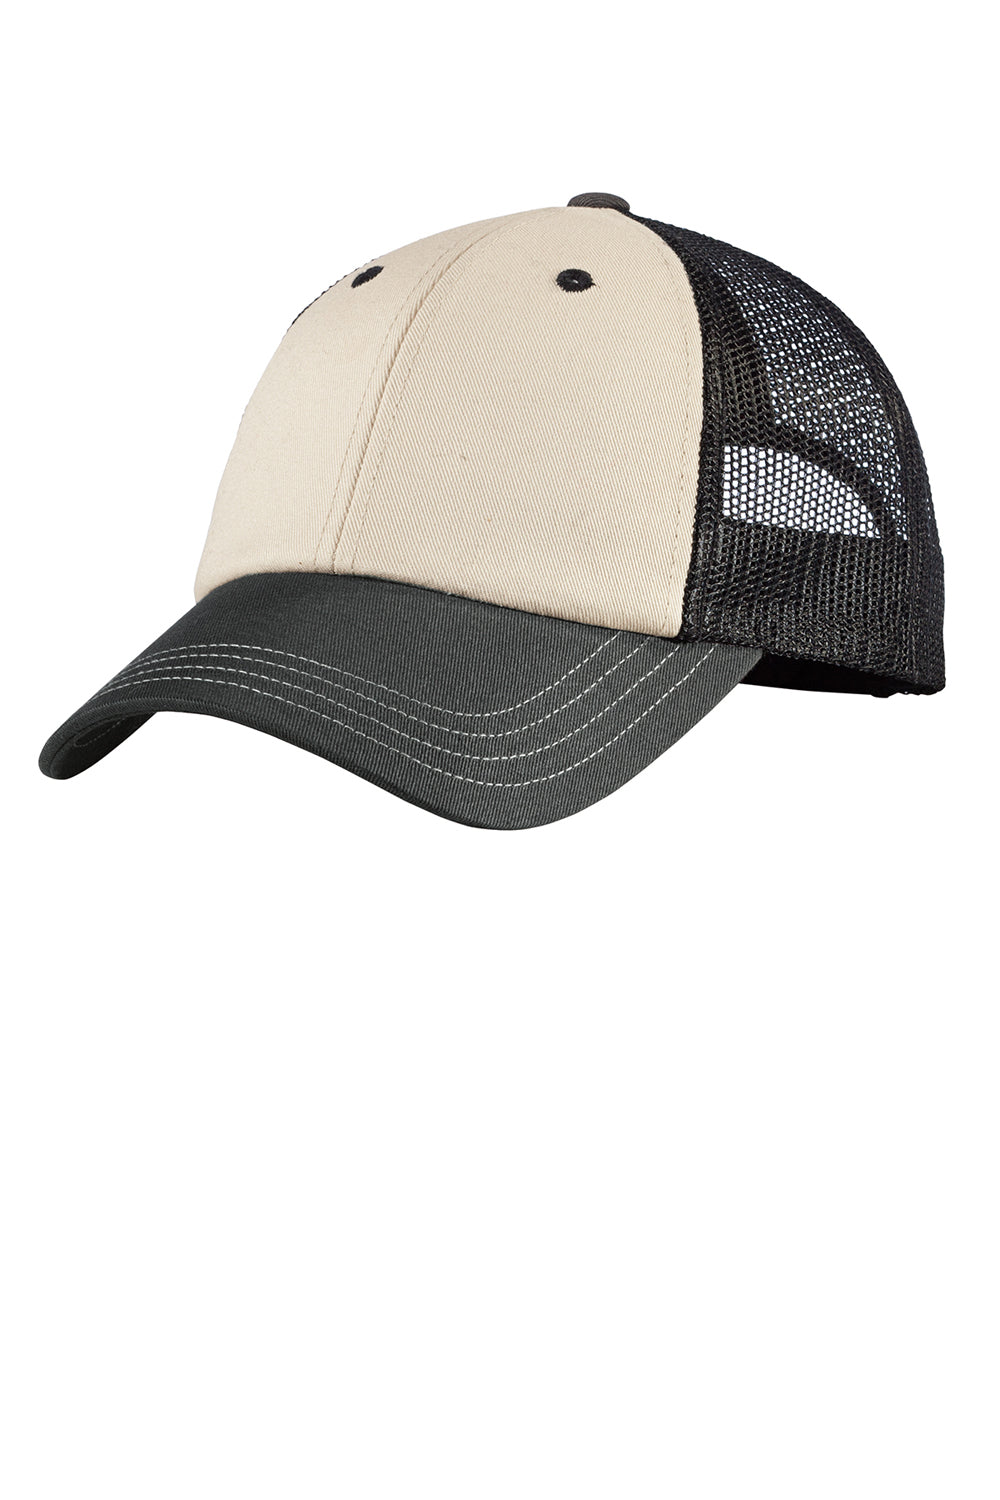 District DT616 Mens Adjustable Hat Sandstone/Charcoal Grey Front